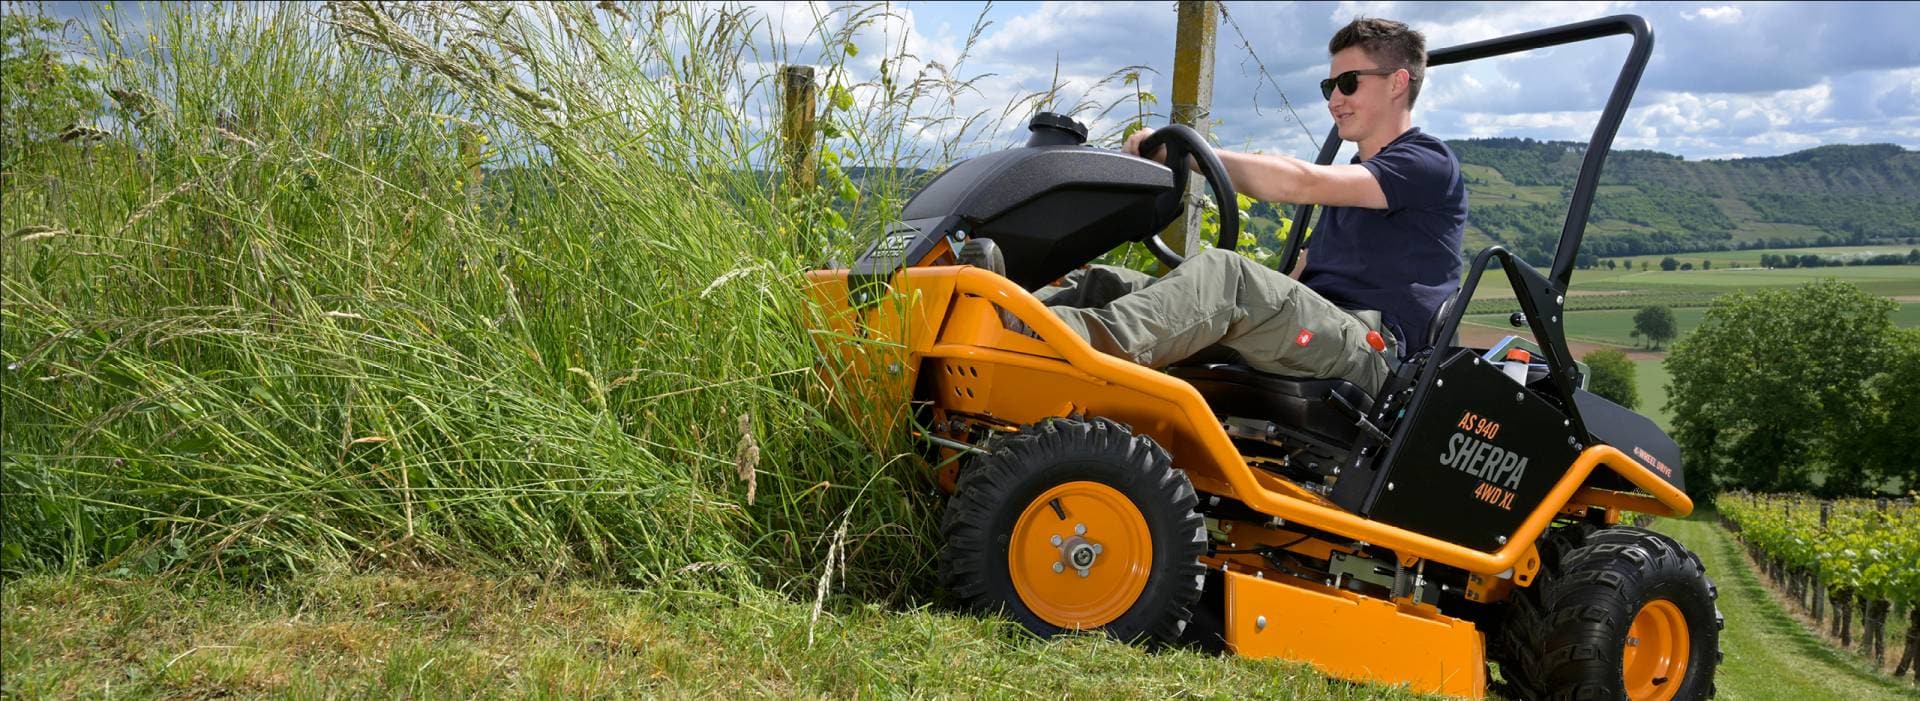 AS-Motor Aufsitzmäher für Ihren Einsatz in hohem Gras an steilen Hängen